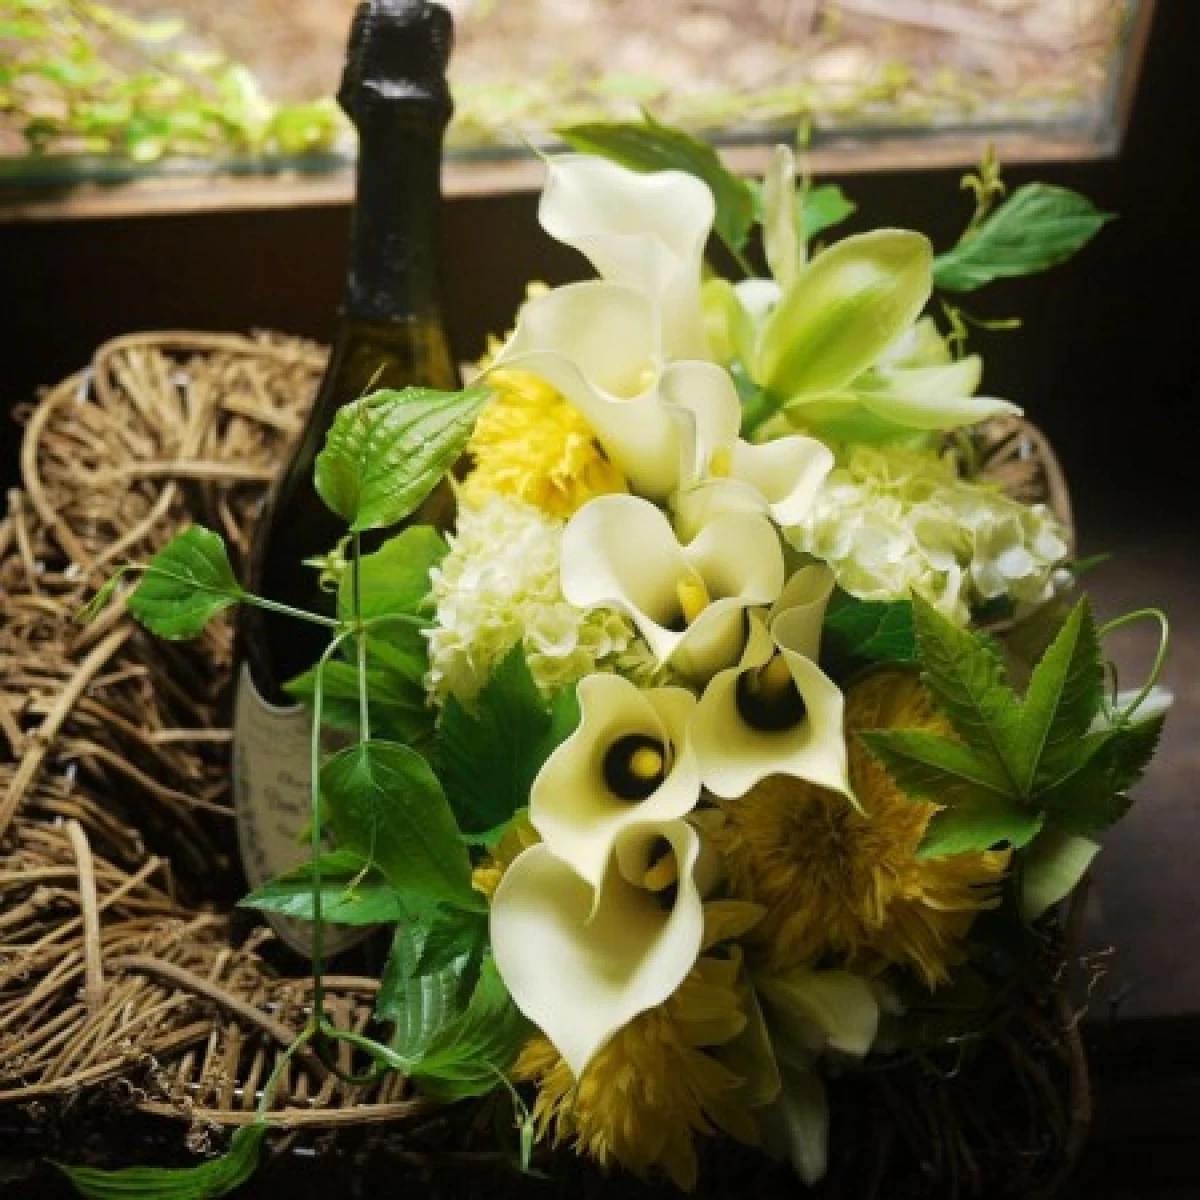 結婚祝い 昇進祝い 誕生日祝い[ワイン 生花 ギフト]ドンペリとホワイトカラーのお花のプレミアムセット